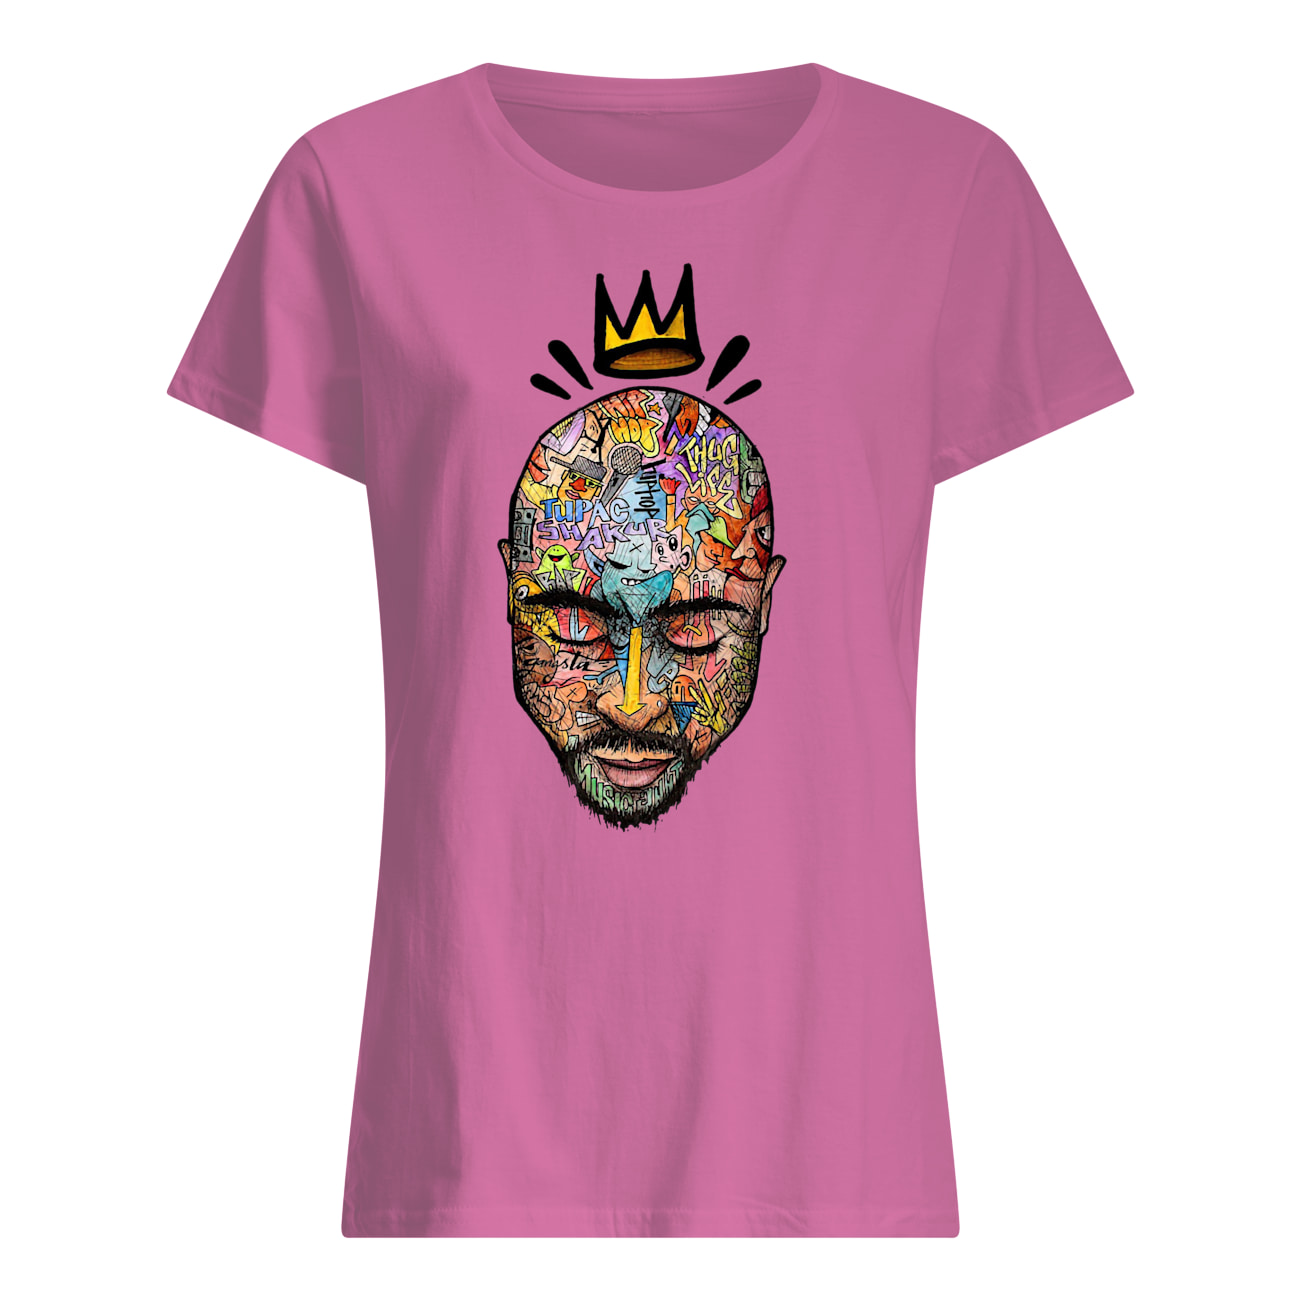 Tupac trippy art womens shirt